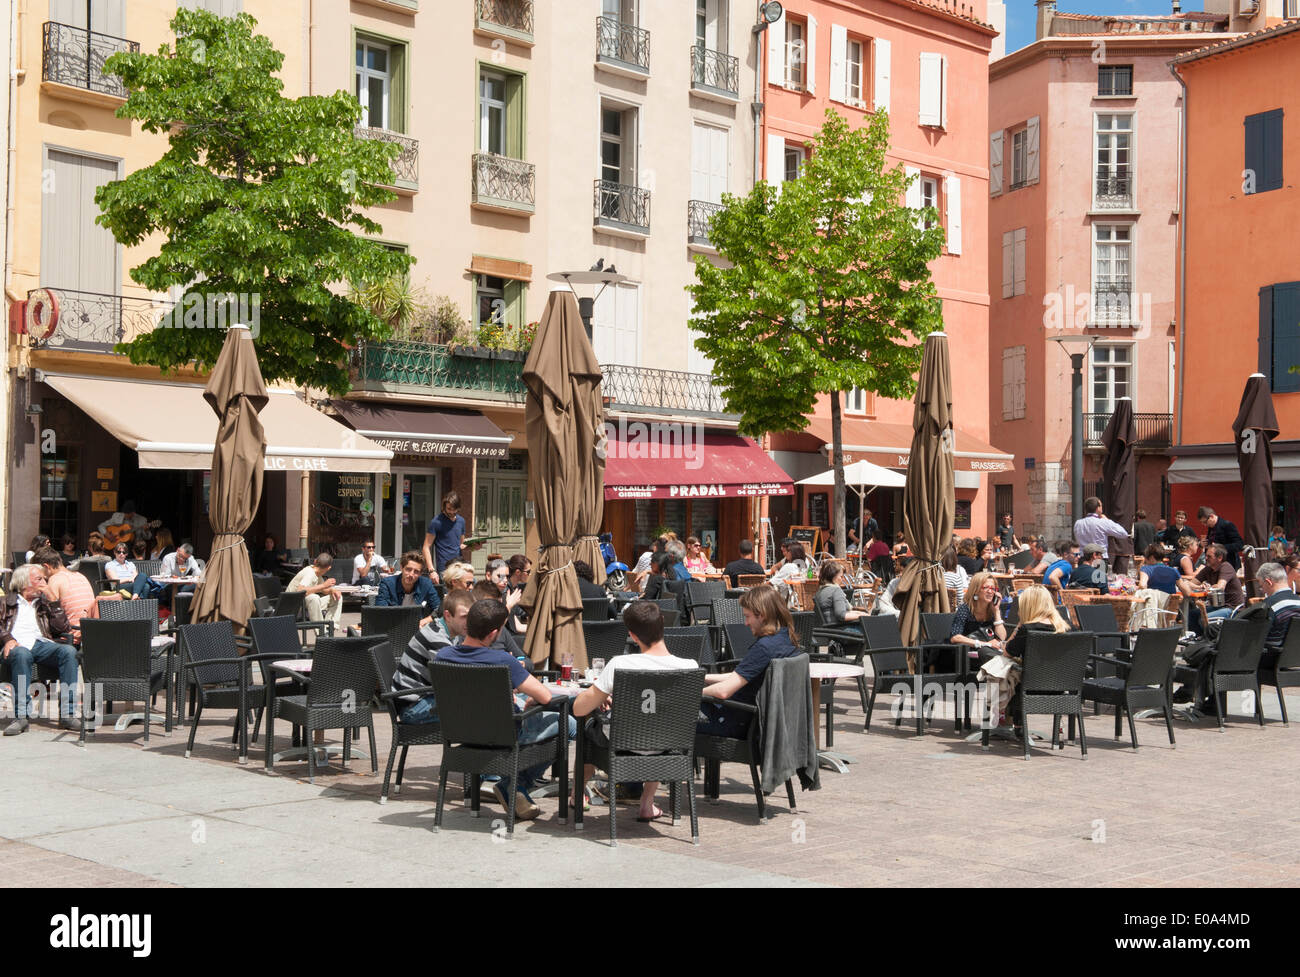 Die quadratische Place De La République in Perpignan, Pyrenäen-Orientales grenzt an Cafés und Bars. Stockfoto